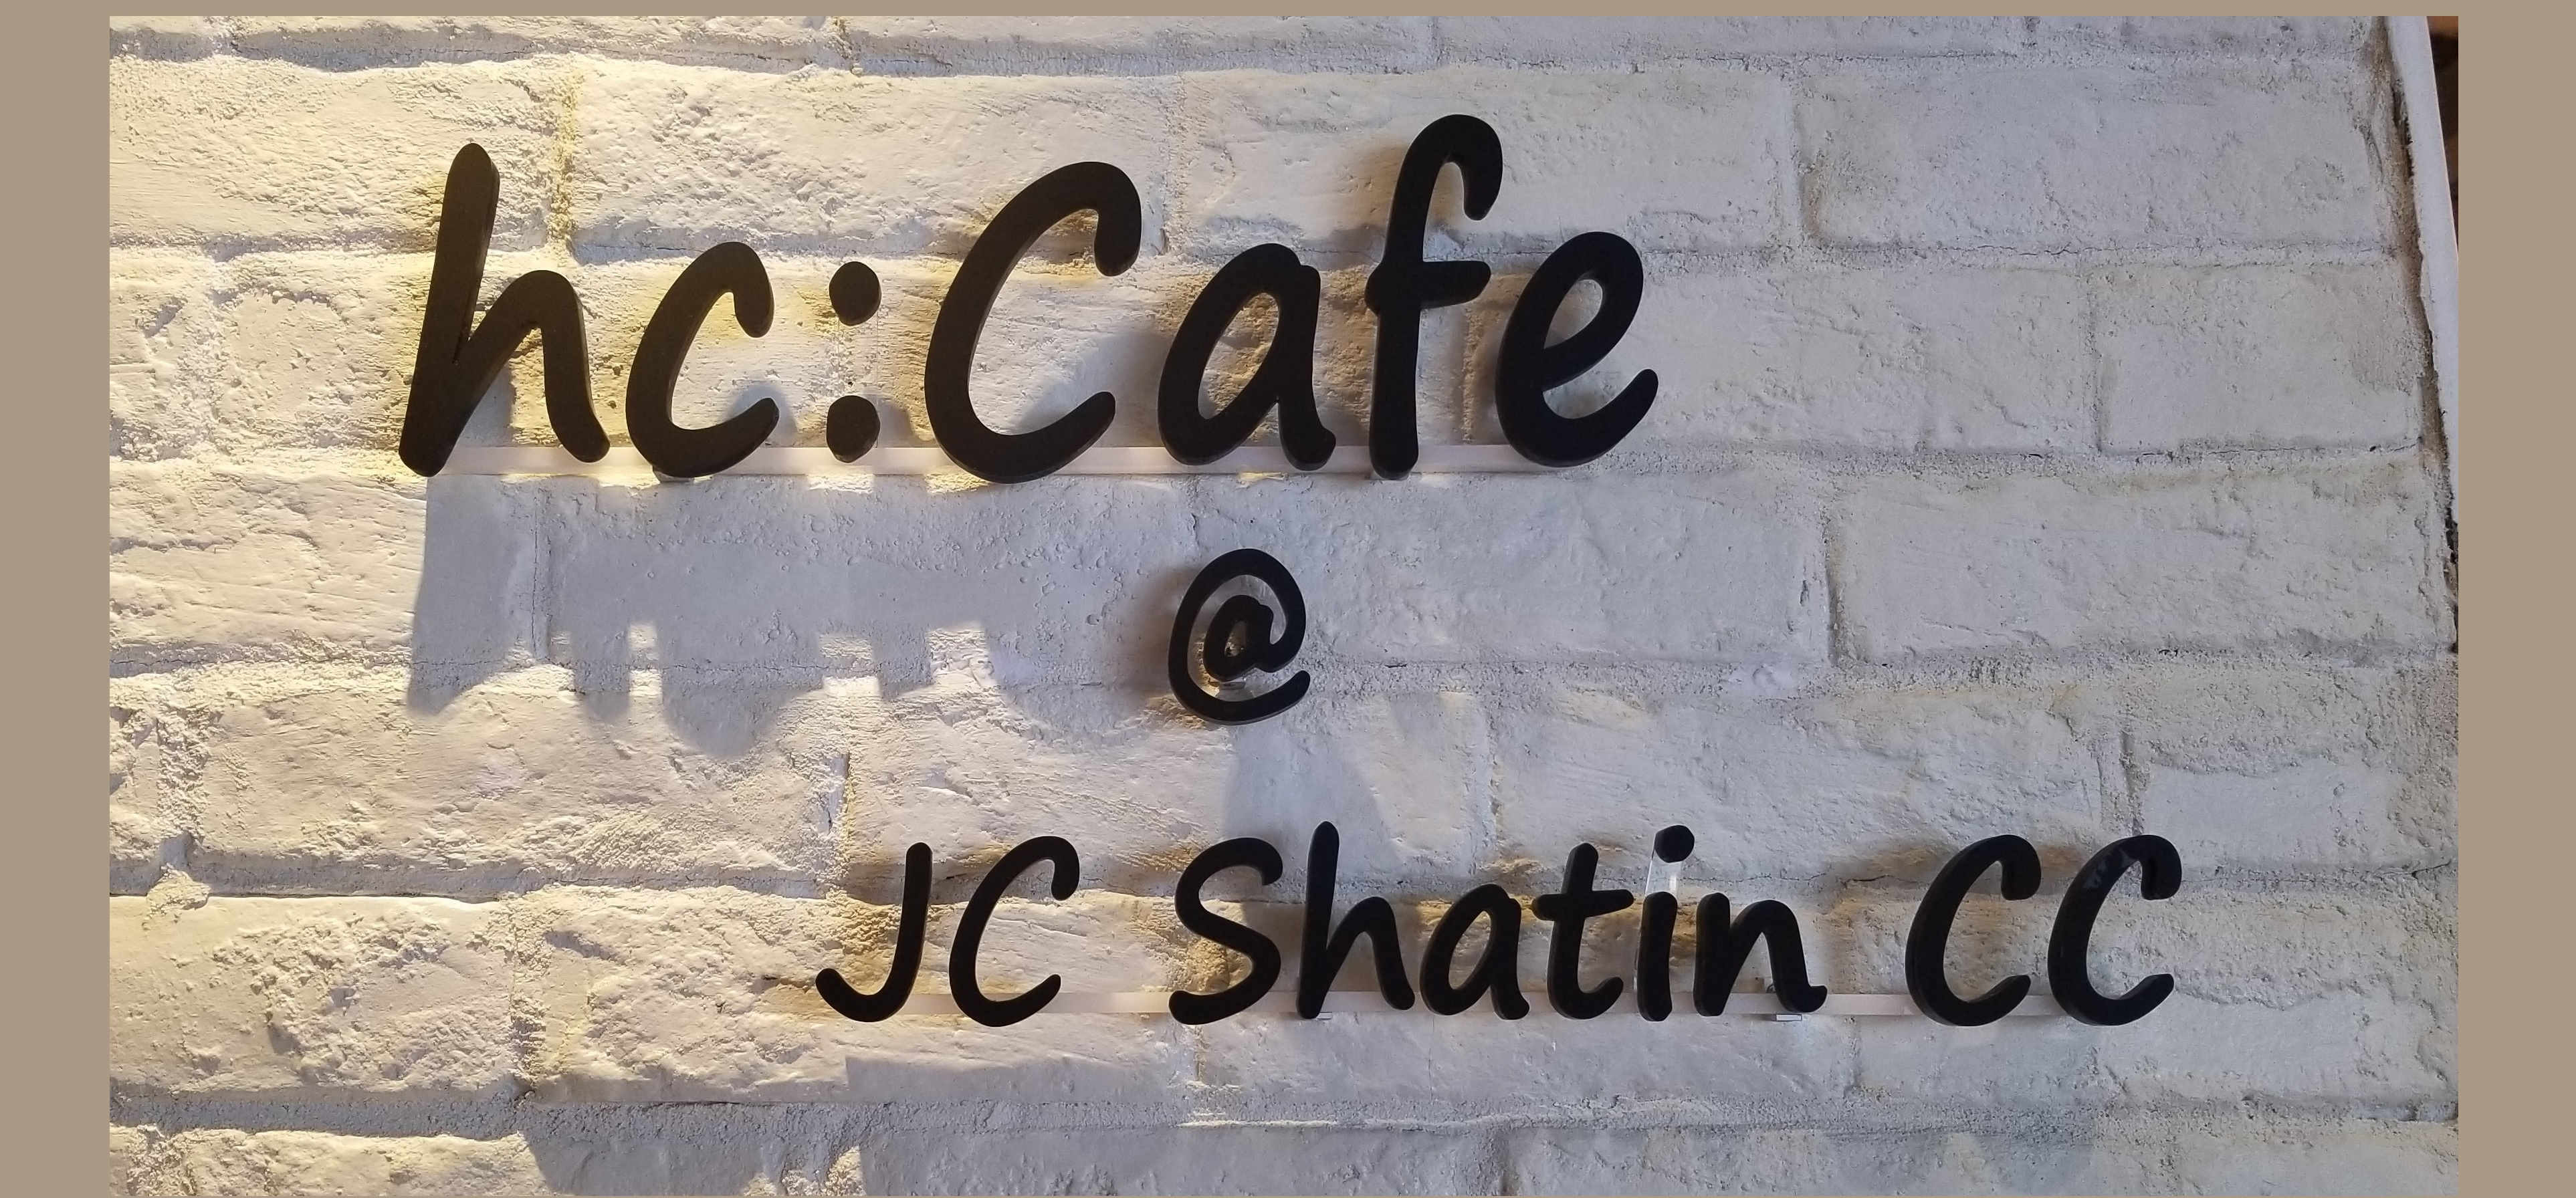 hc:Café @ JC Shatin CC